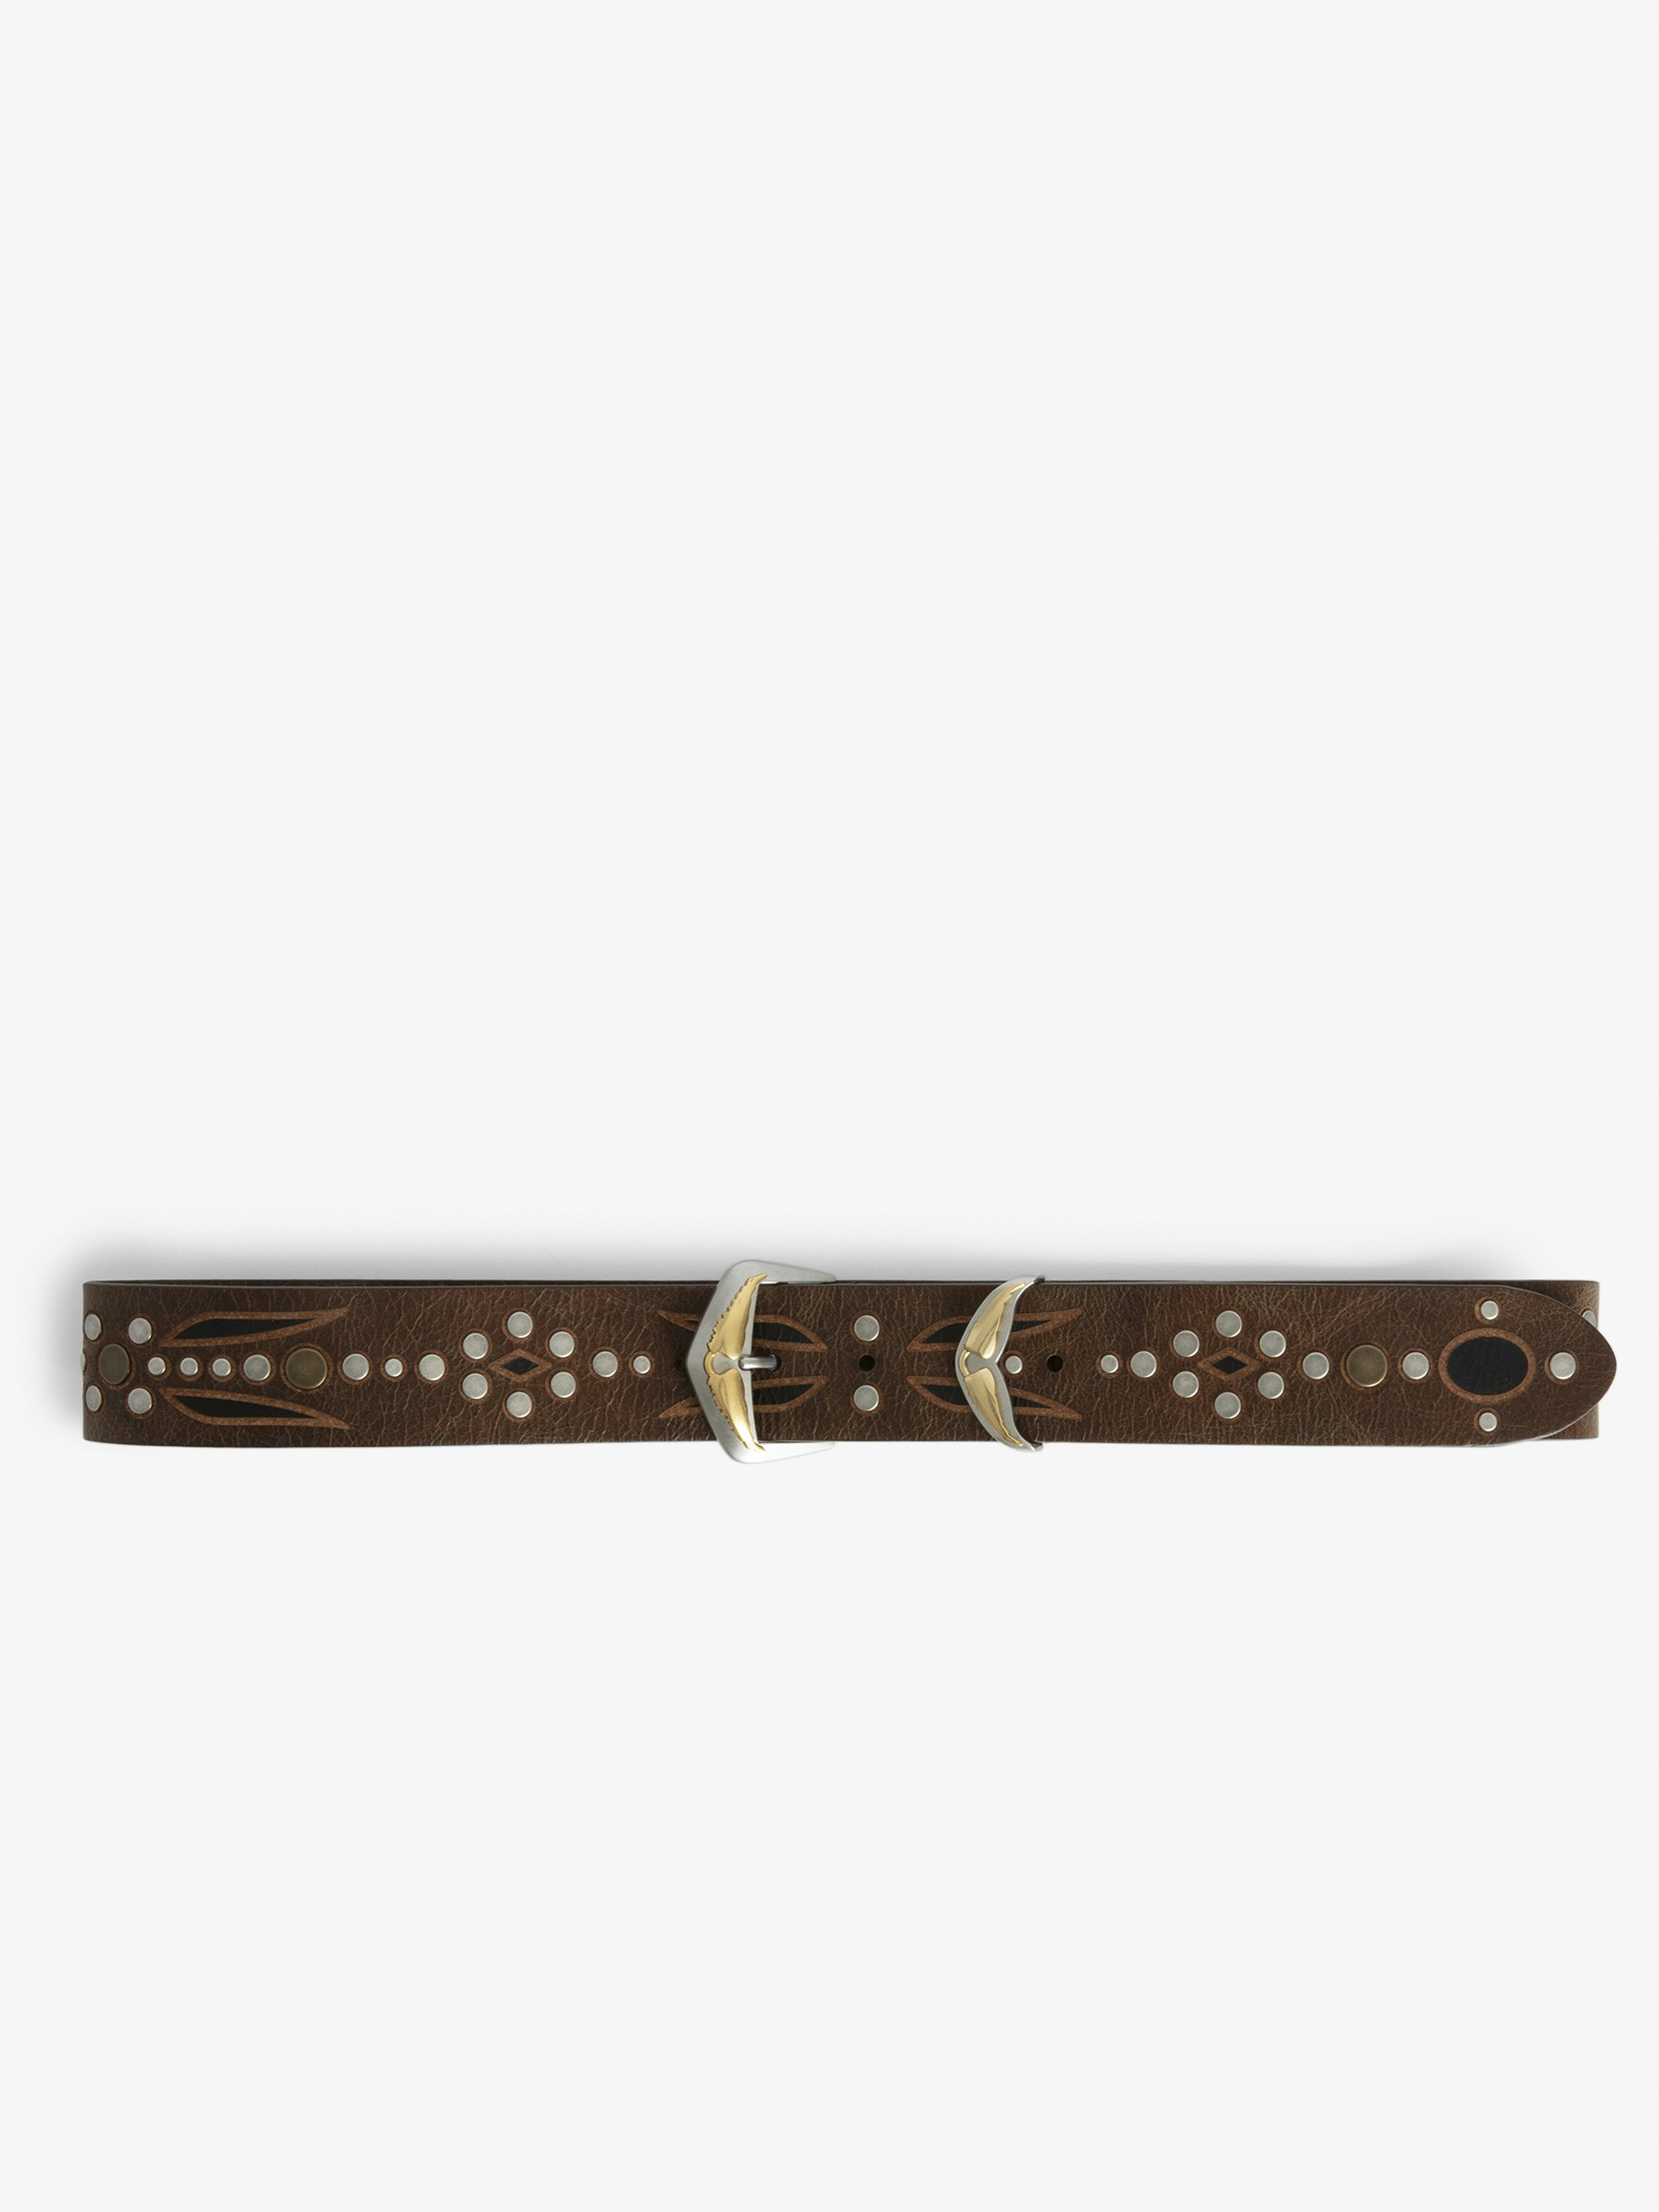 Cinturón Jane - Cinturón de piel vintage de color marrón decorado con motivos grabados, tachuelas y hebilla en forma de ala emblemáticas.